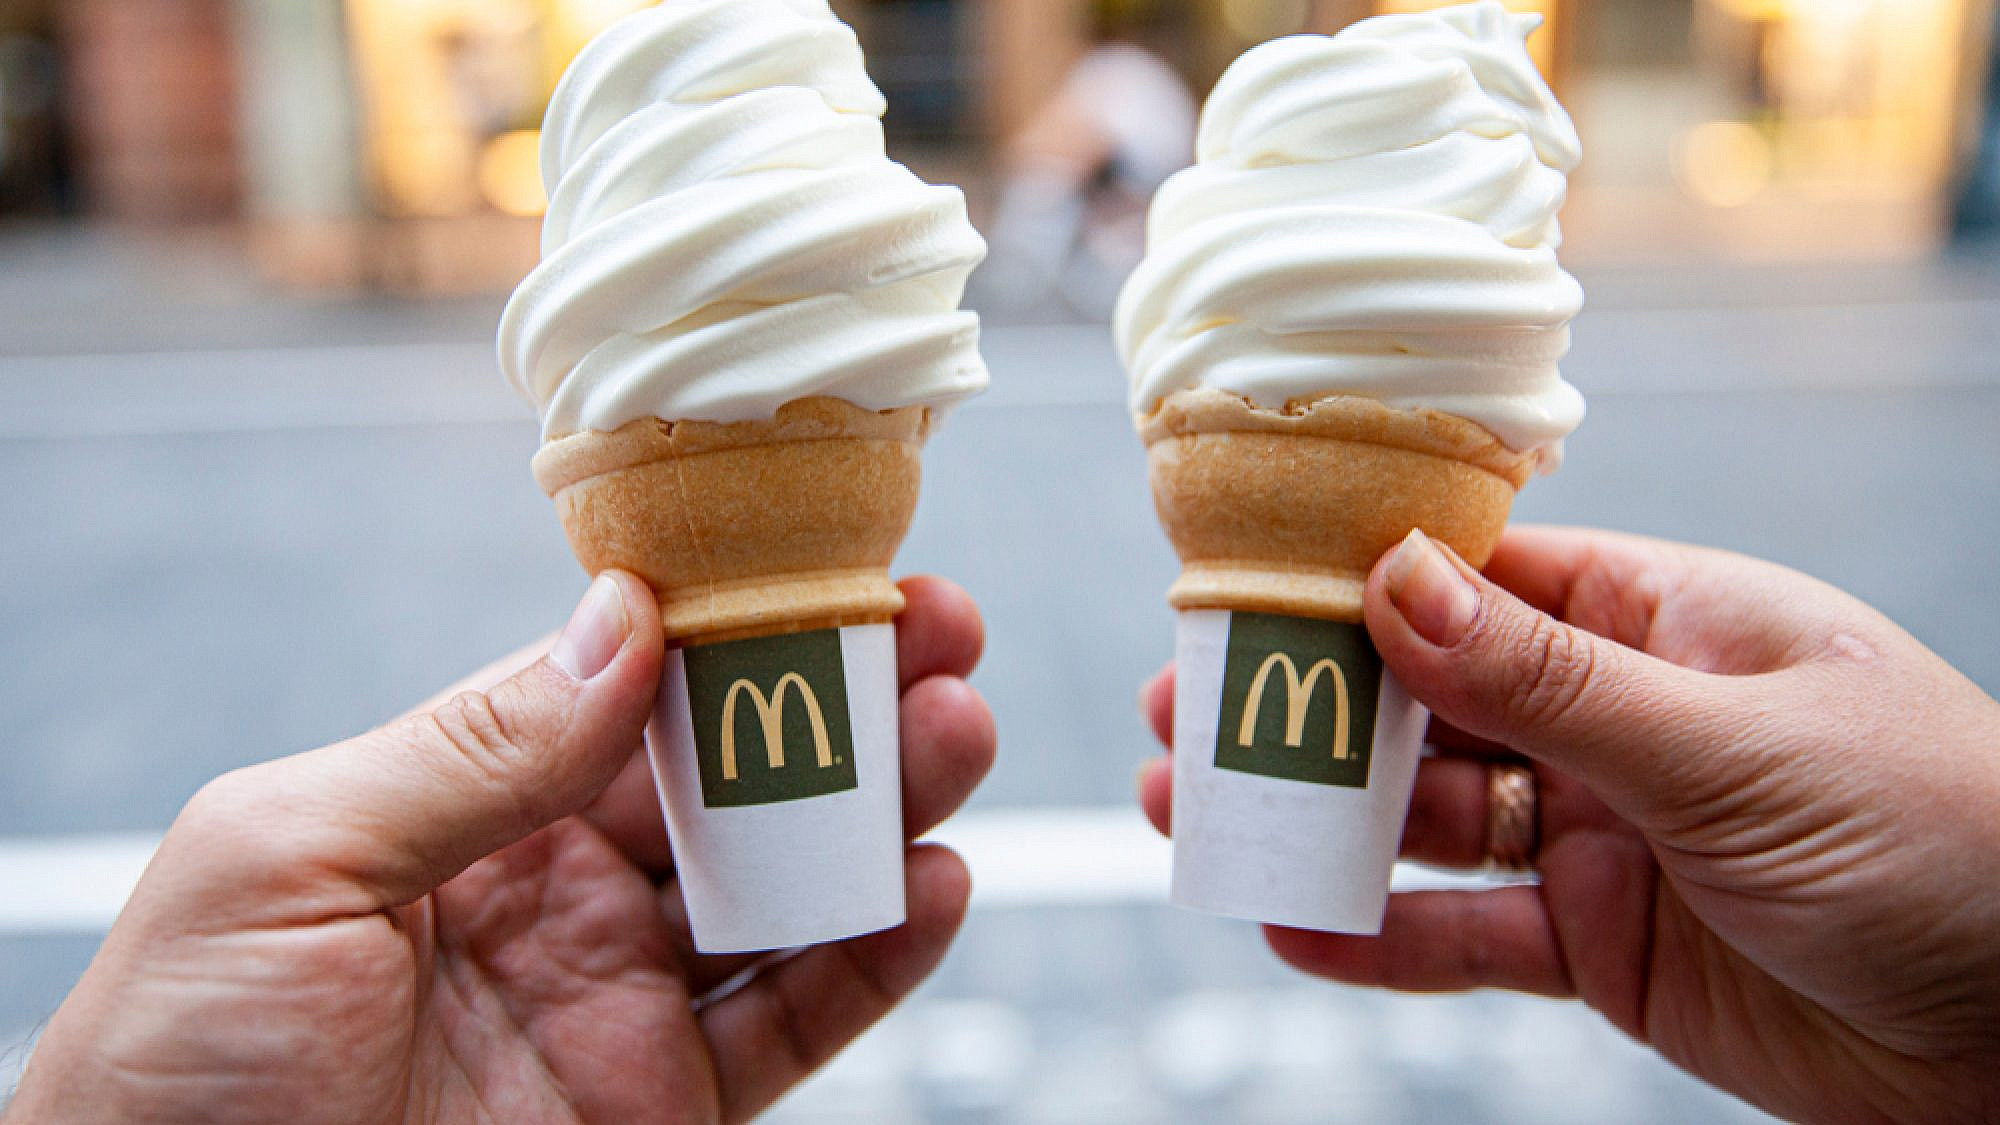 ויש גם את הקלאסיקה. הגלידה של מקדונלדס. צילום: Shutterstock